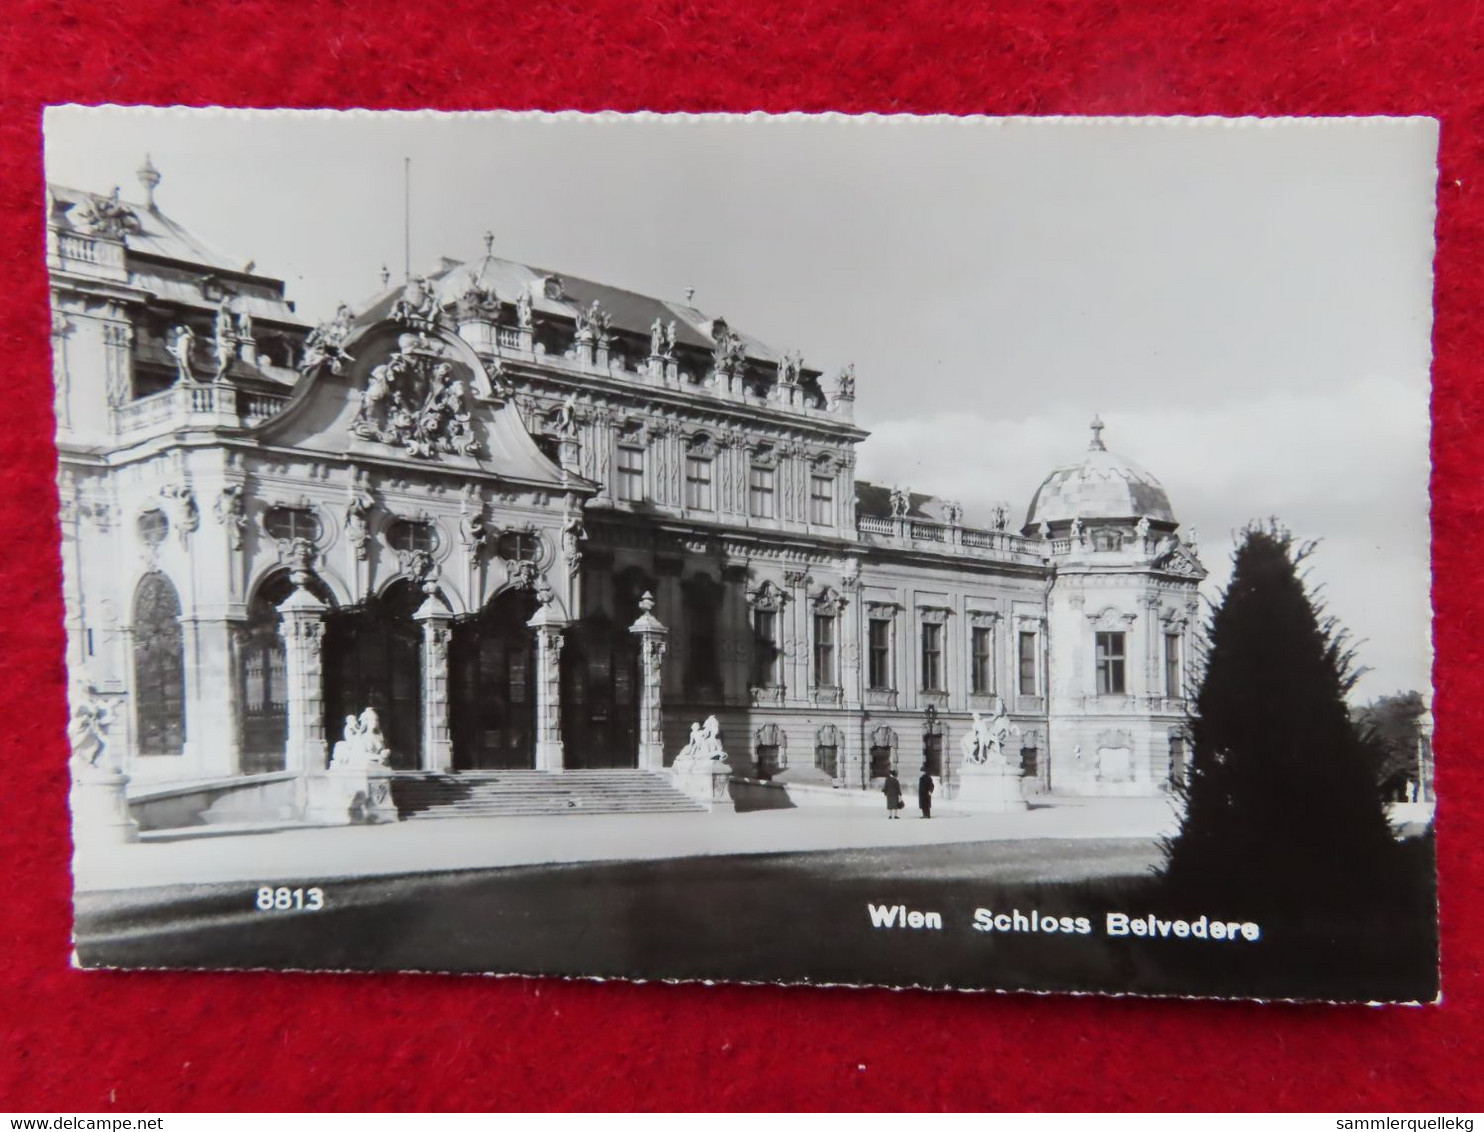 AK: Echtfoto - Wien Schloss Belvedere, Gelaufen 10. 5. 1955 (Nr.3670) - Belvedere